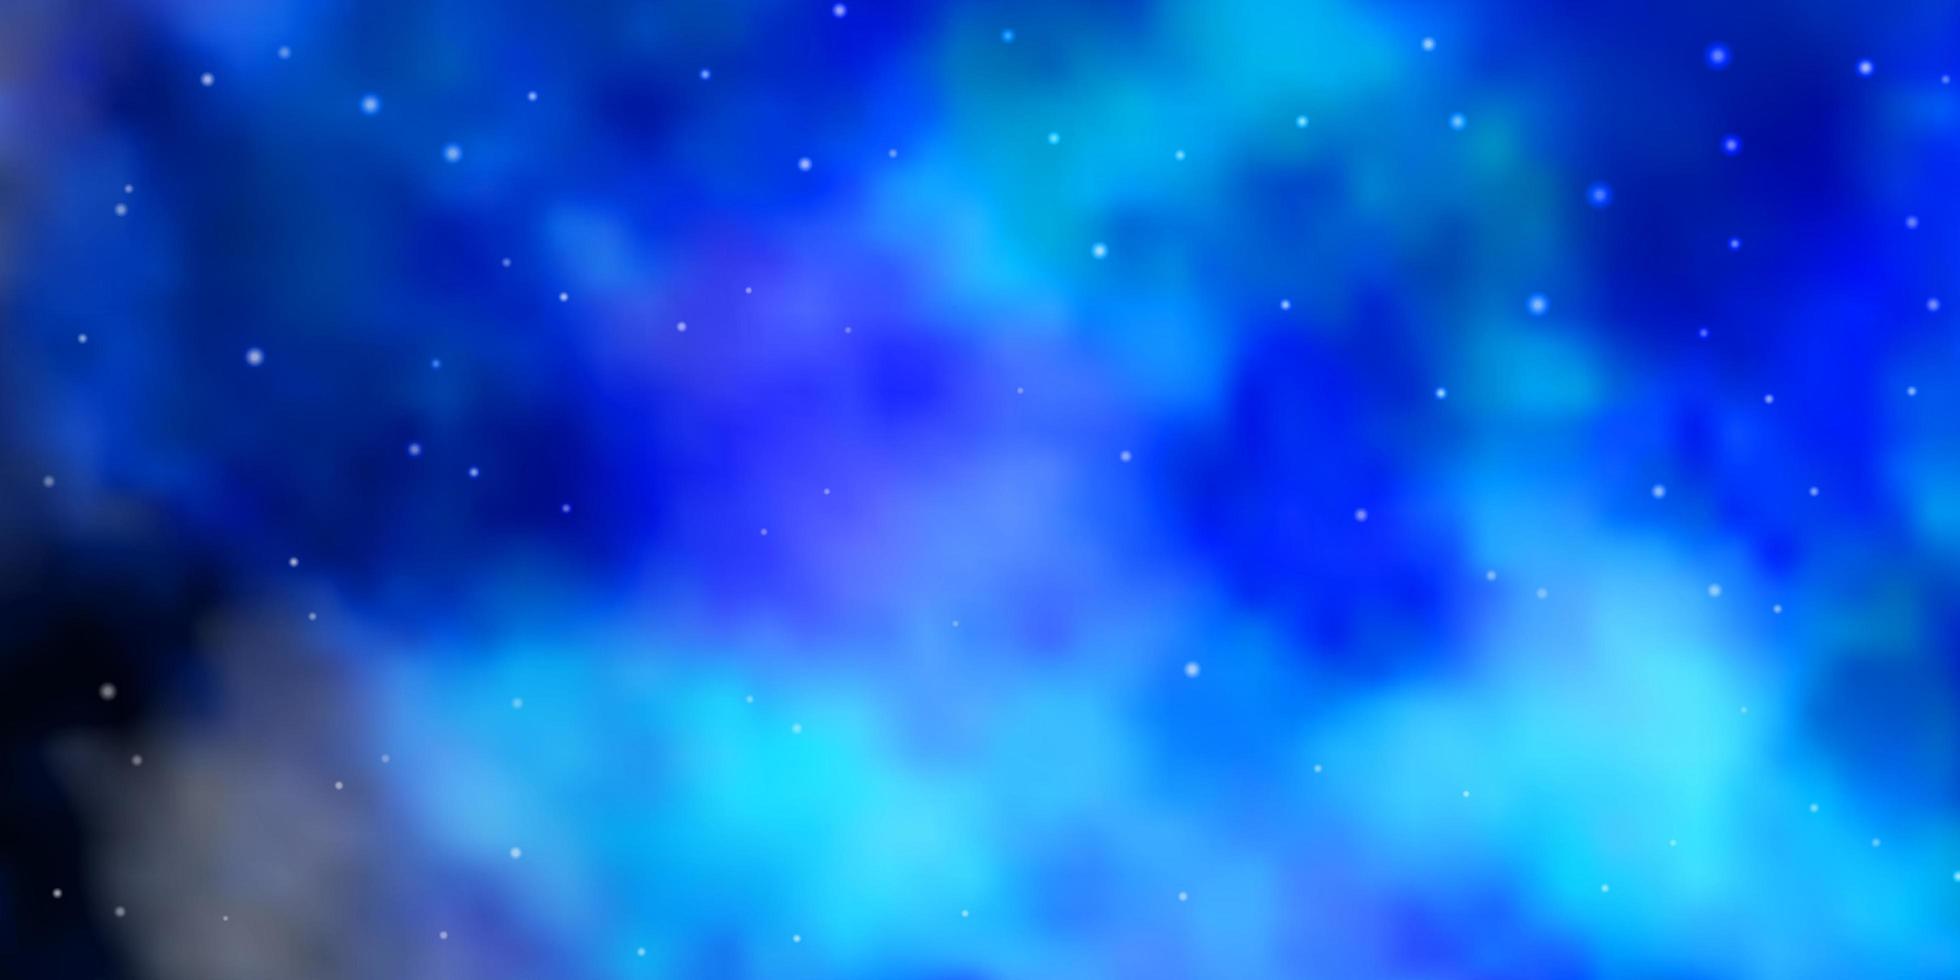 mörkblå vektorlayout med ljusa stjärnor dekorativ illustration med stjärnor på abstrakt malltema för mobiltelefoner vektor